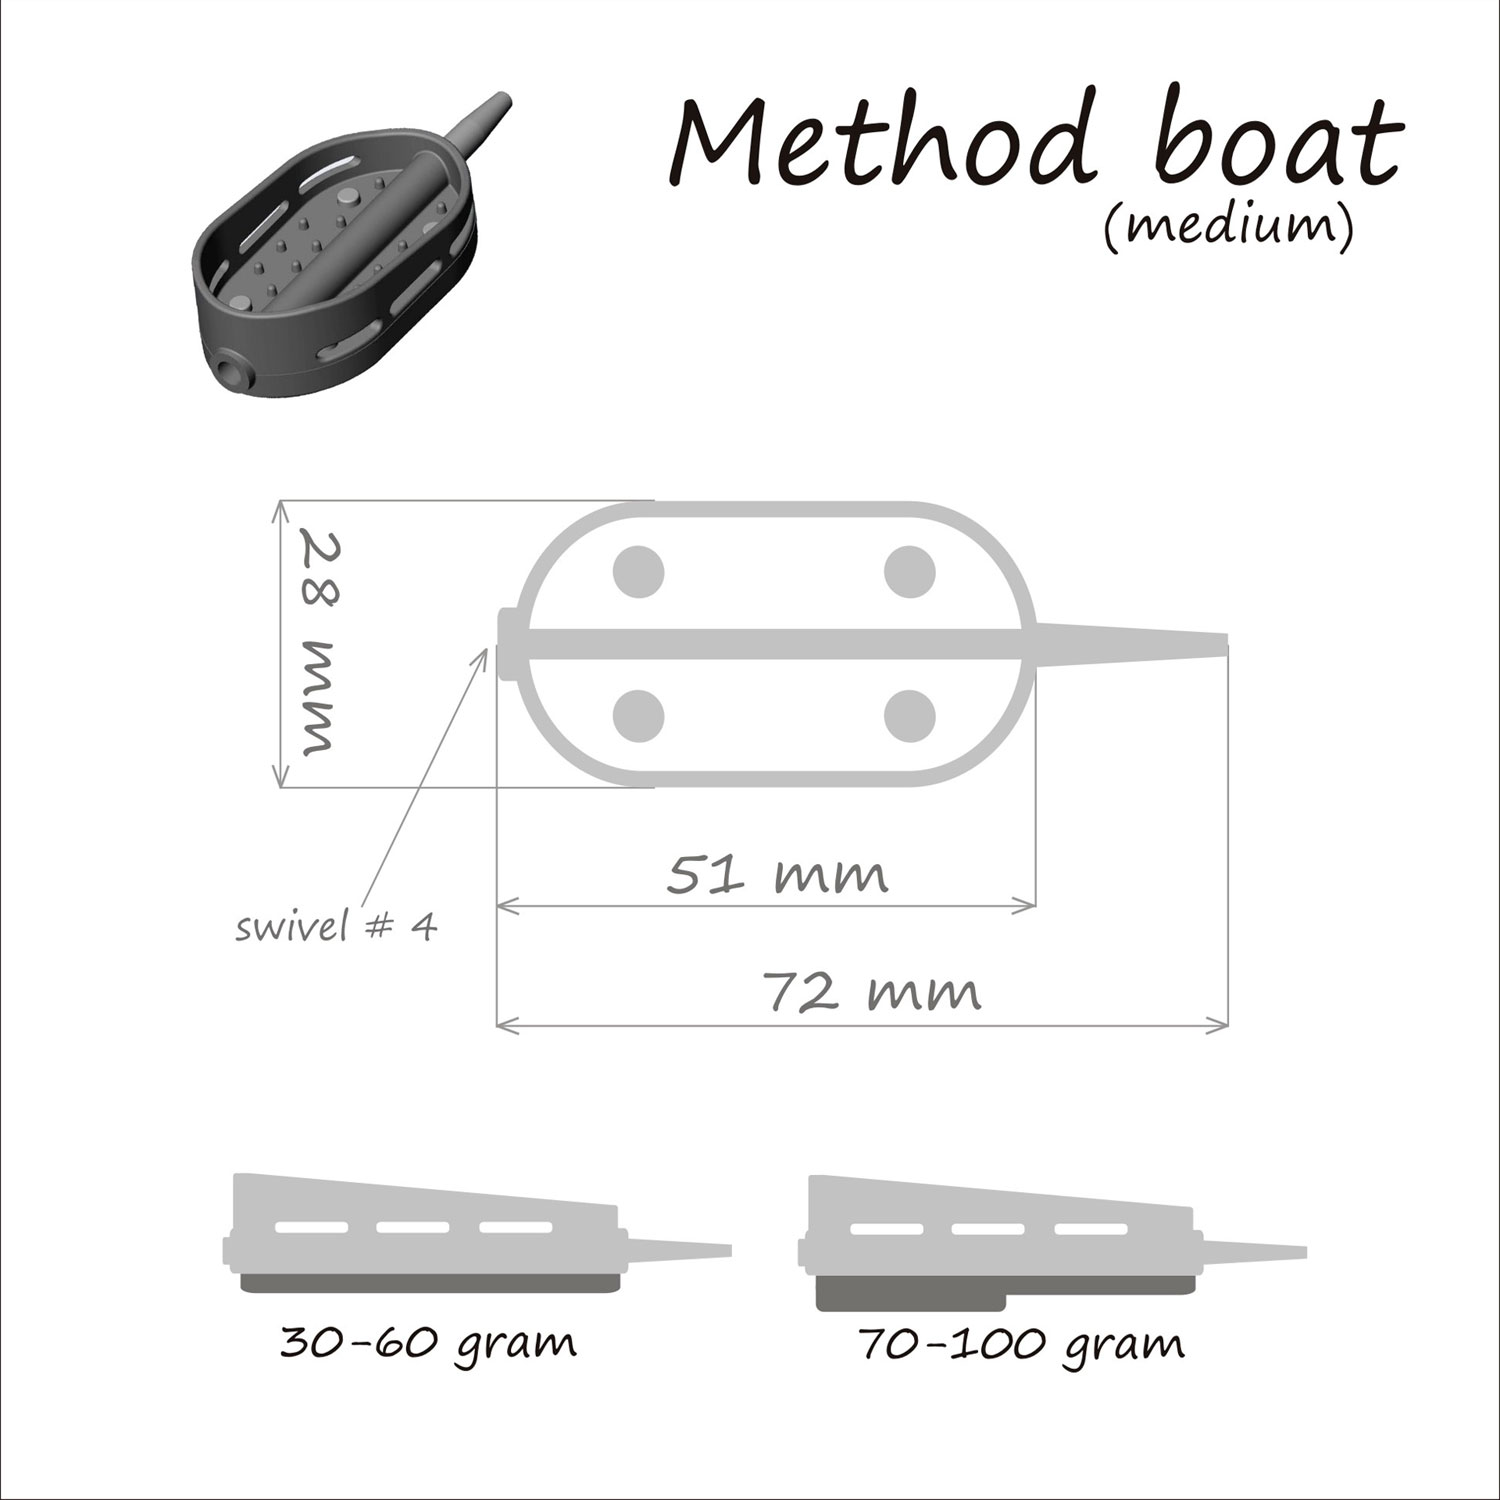 Кормушка ORANGE Boat Flat Method, 30 гр, в тех. уп. 10 шт